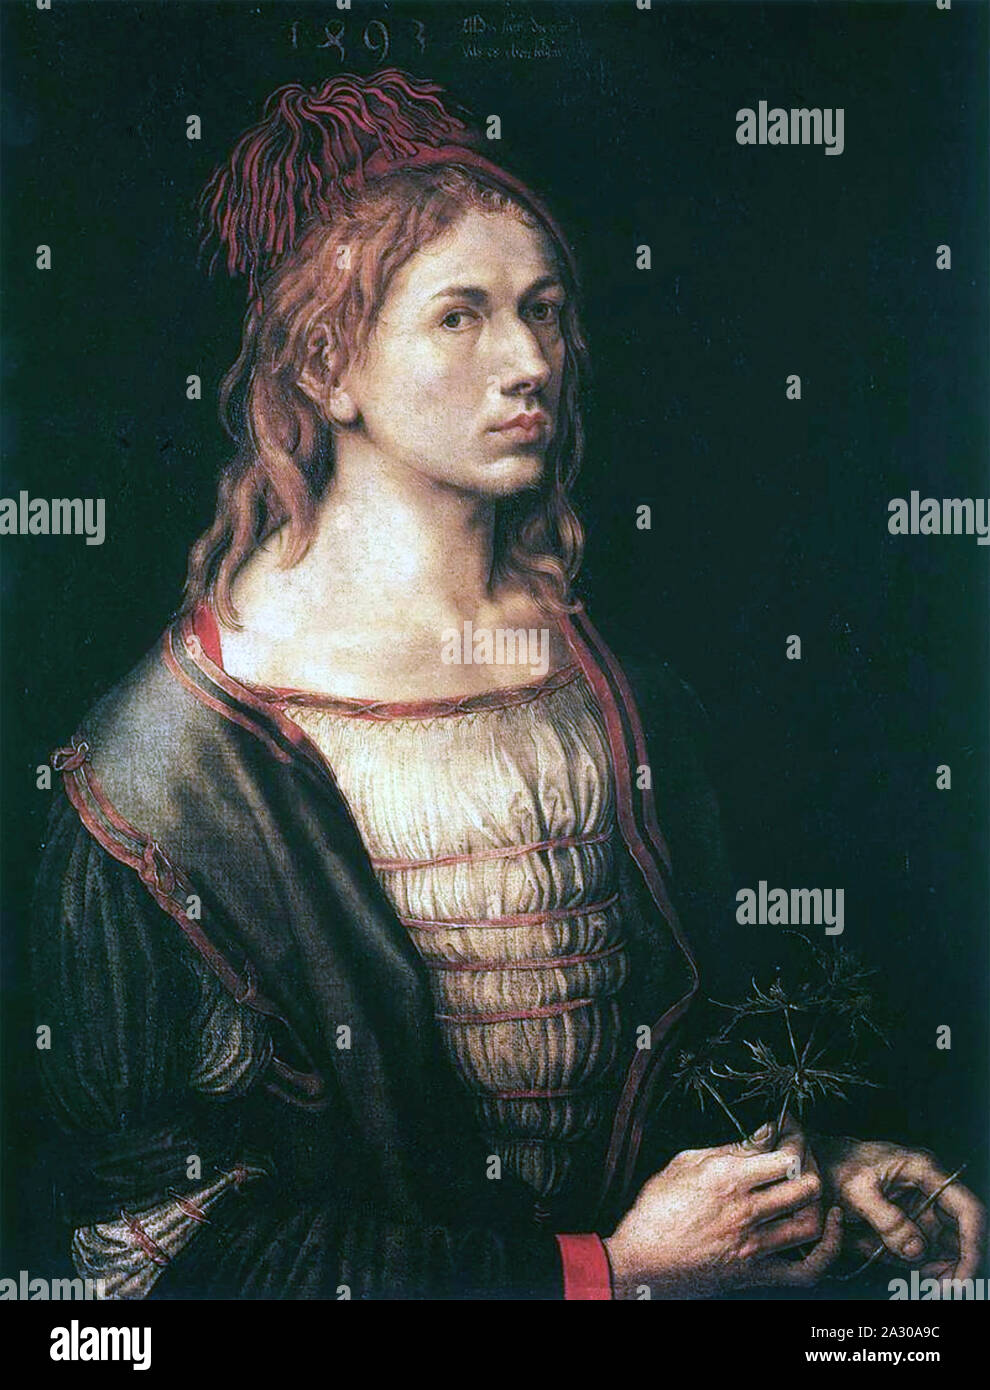 ALBRECHT DÜRER (1471-1528) German artist.. Self portrait 1493. Stock Photo